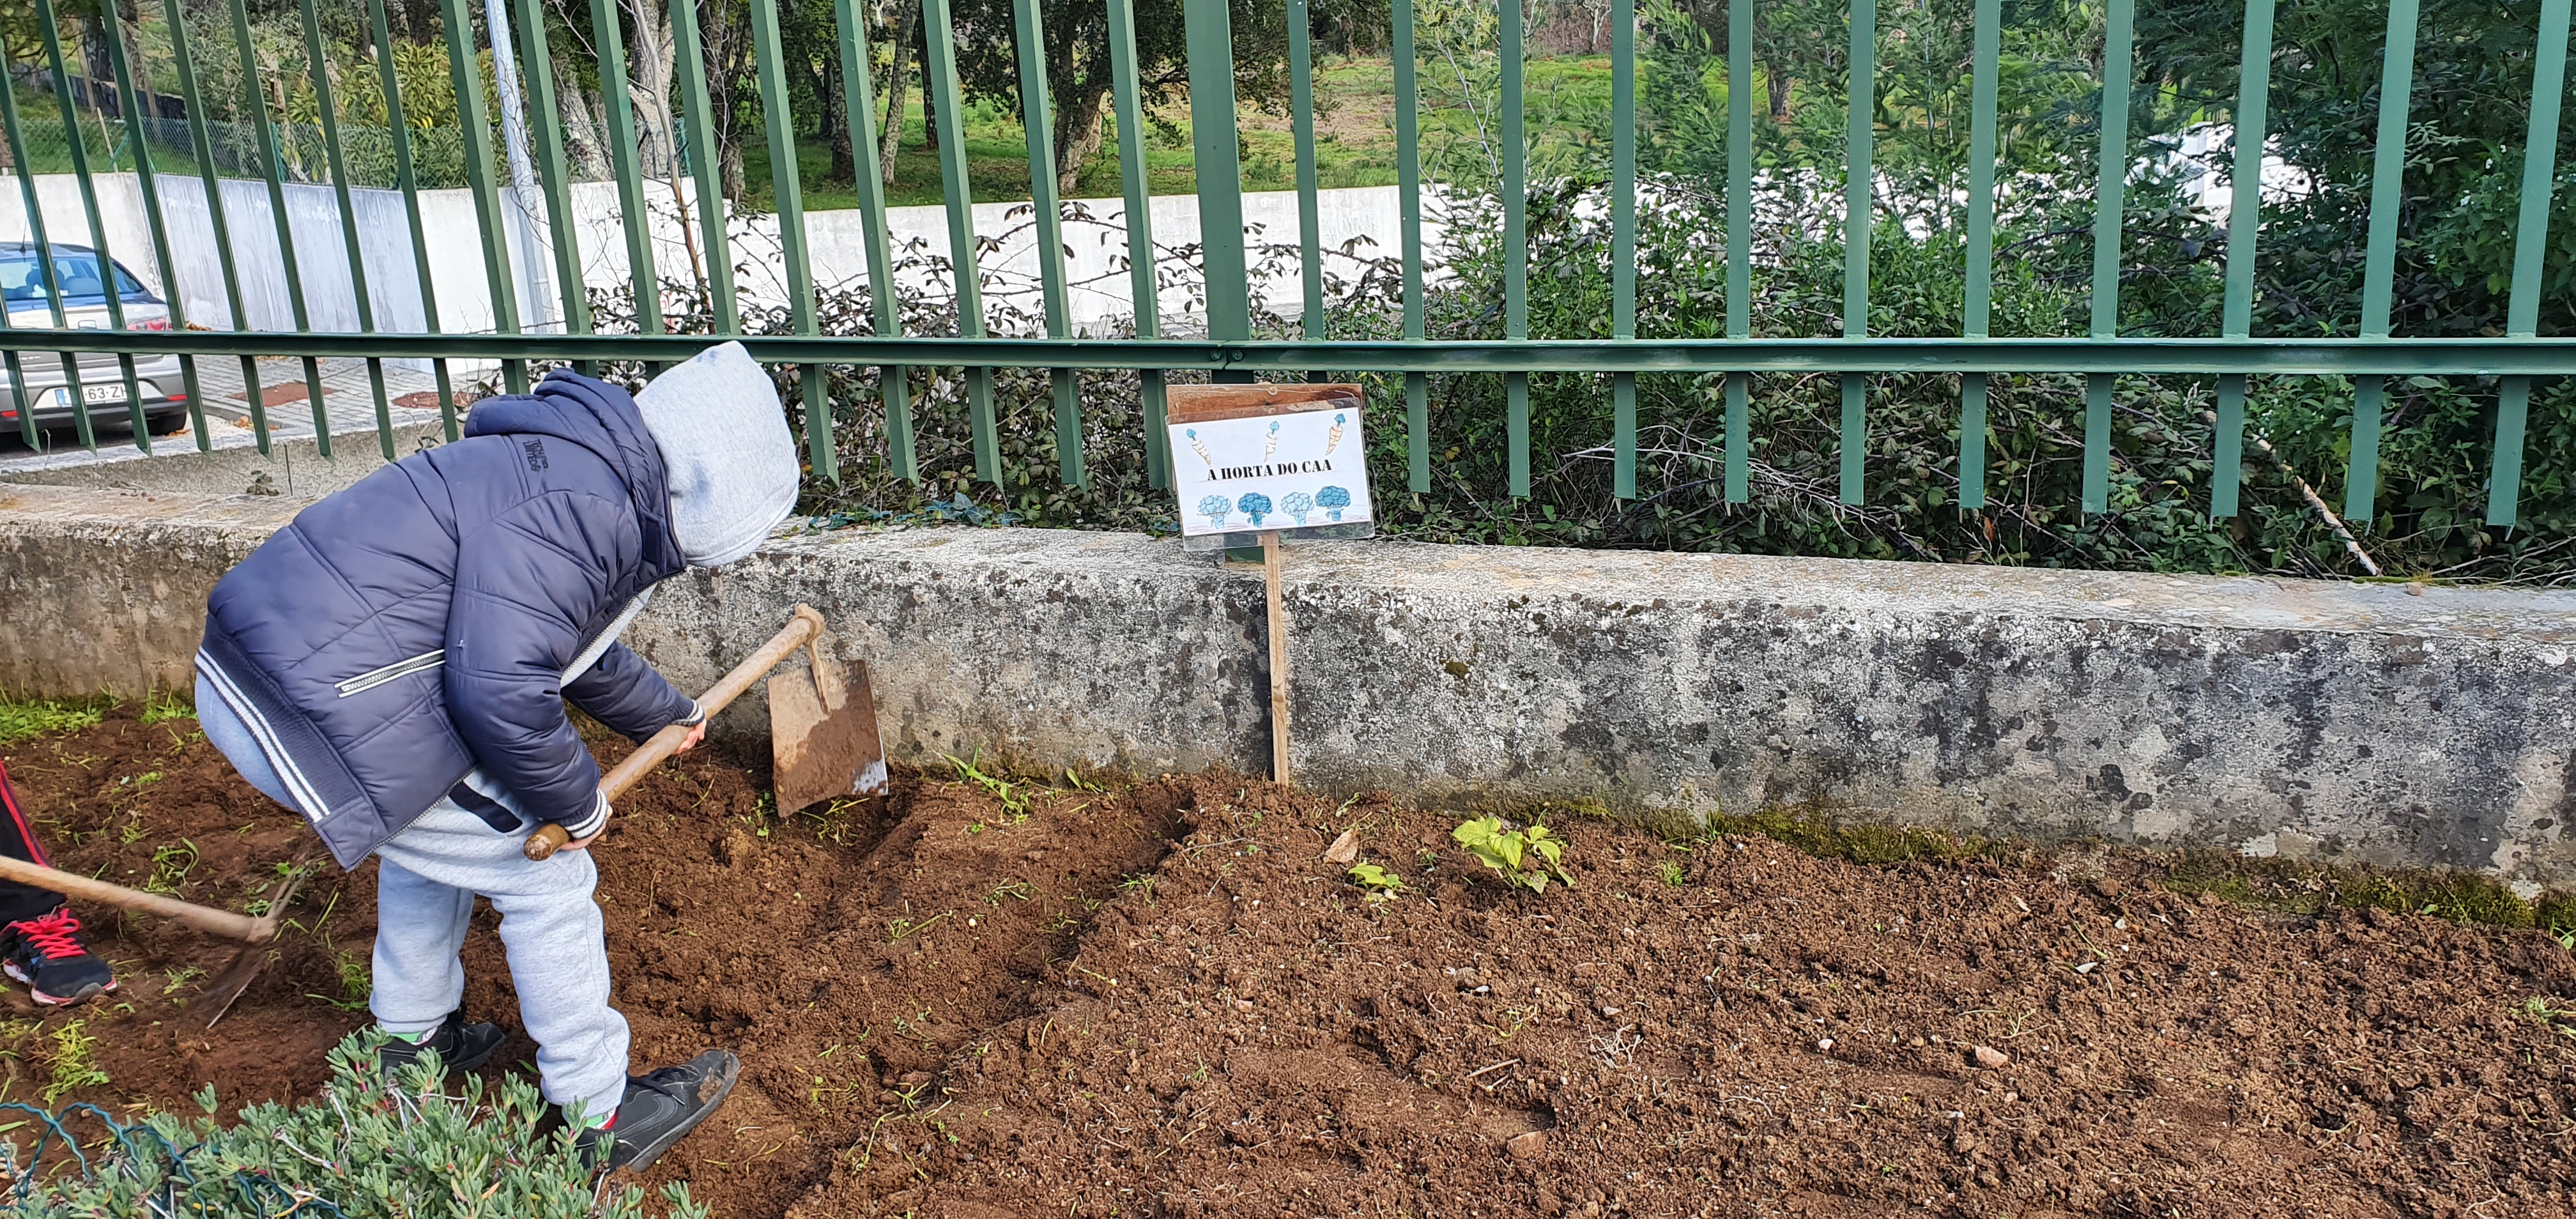 O Inicio da horta - os alunos trabalham a terra abrindo  os regos para  a sementeira da batata, com a ajuda de uma enxada.